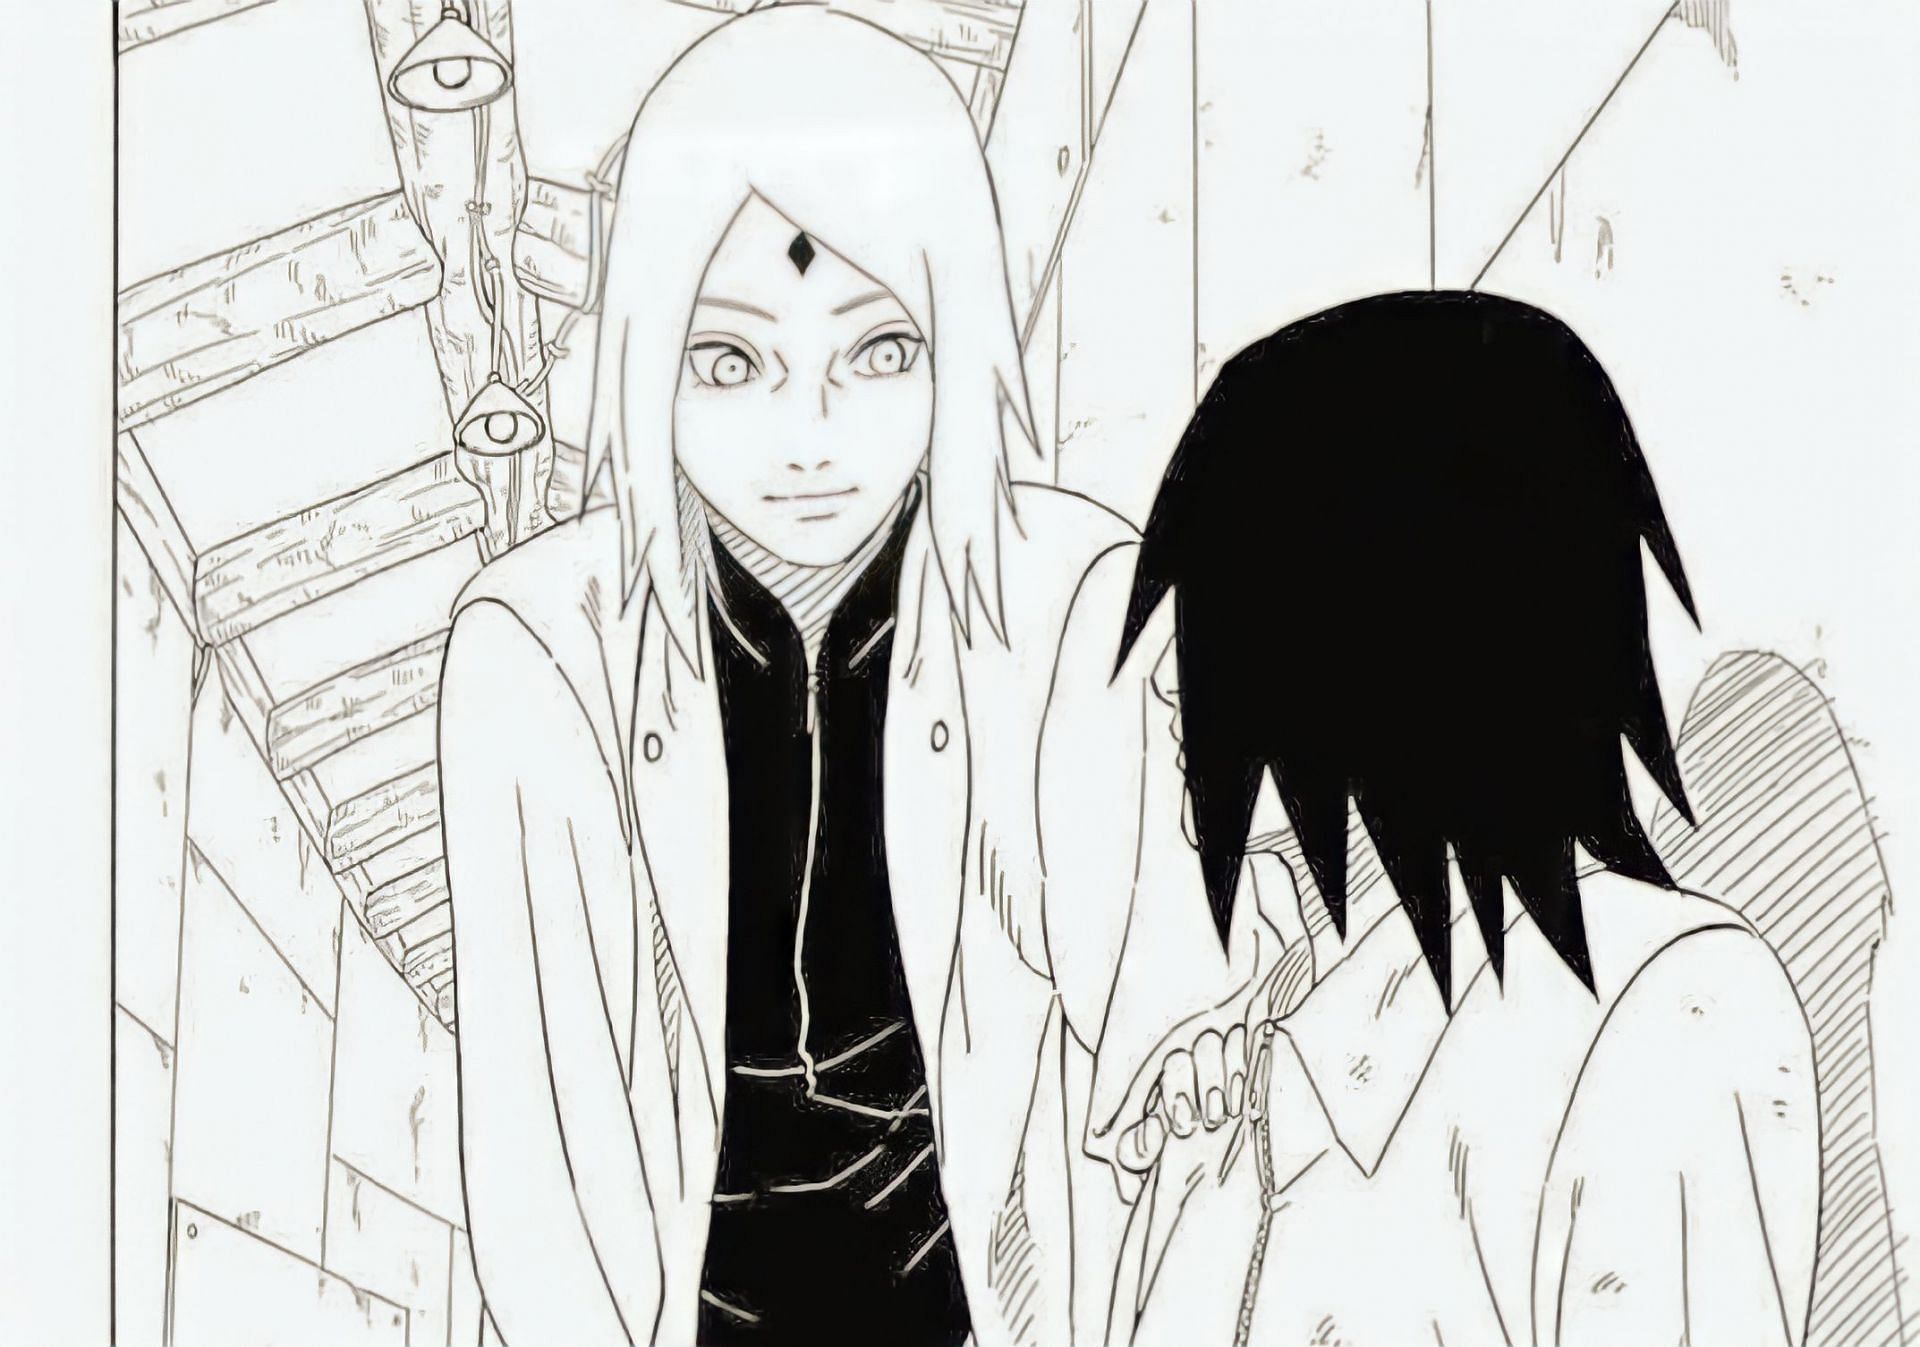 Sakura and Sasuke in the manga (Image via Masashi Kishimoto/Shueisha)